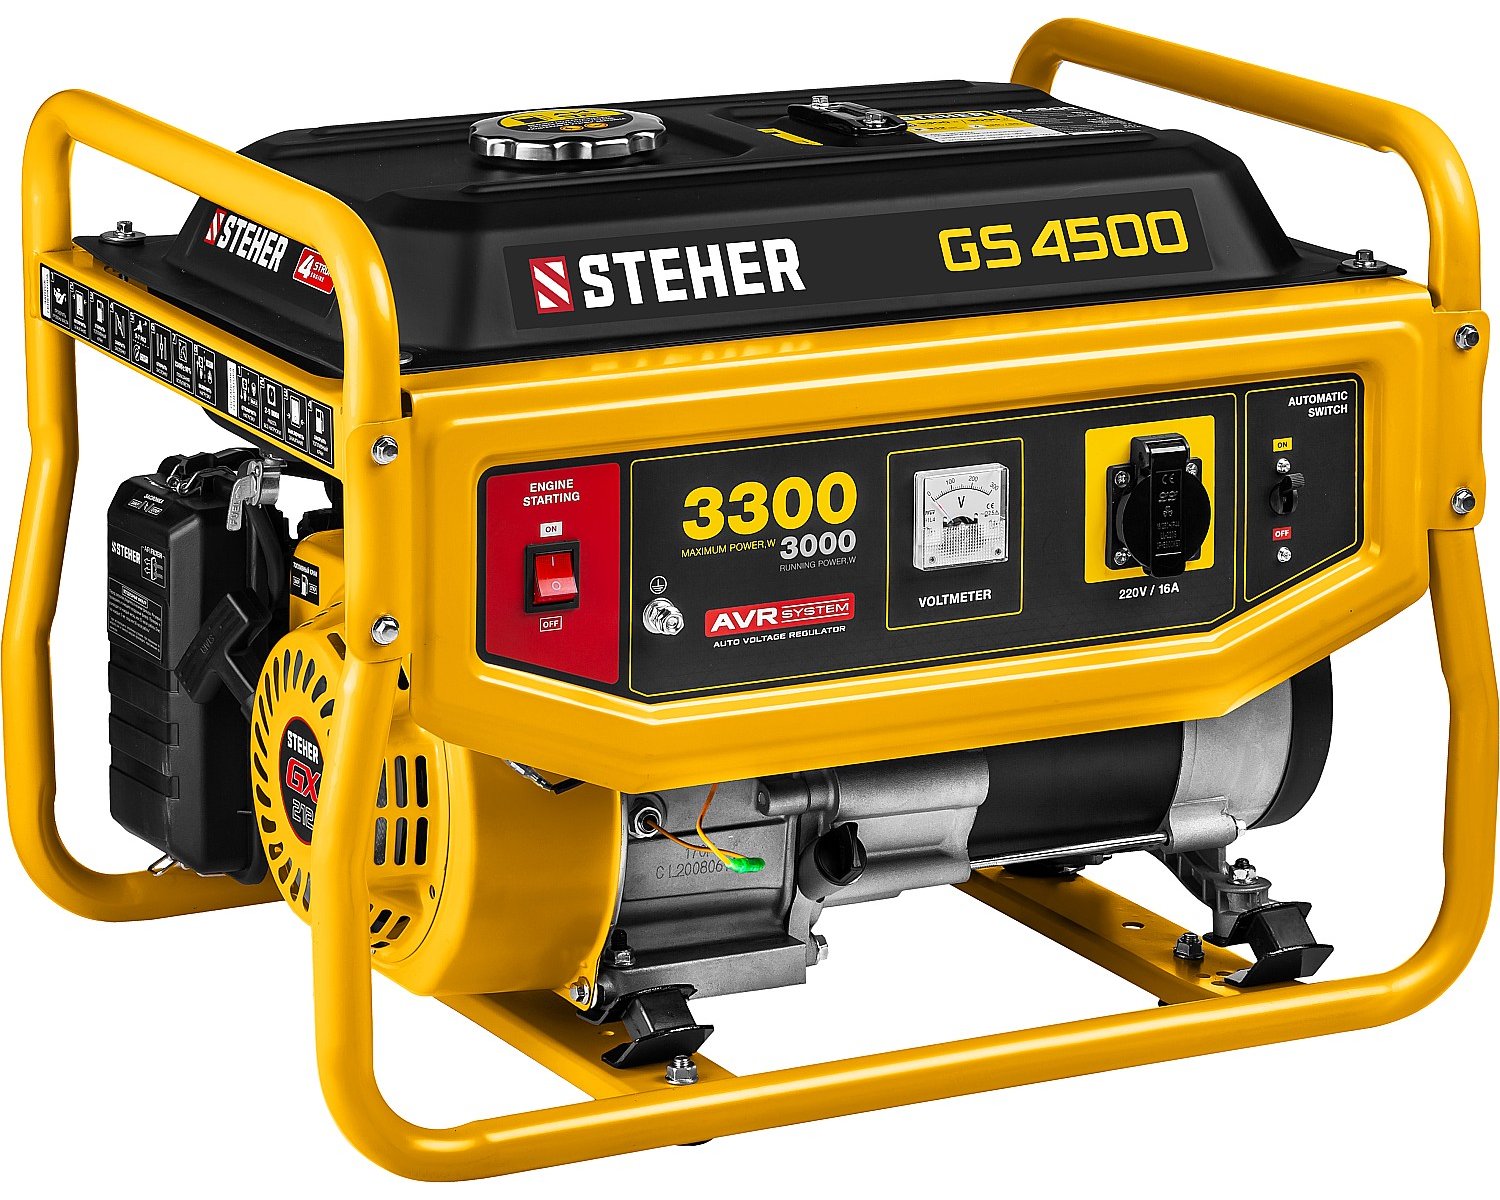   STEHER 3300  (GS-4500)